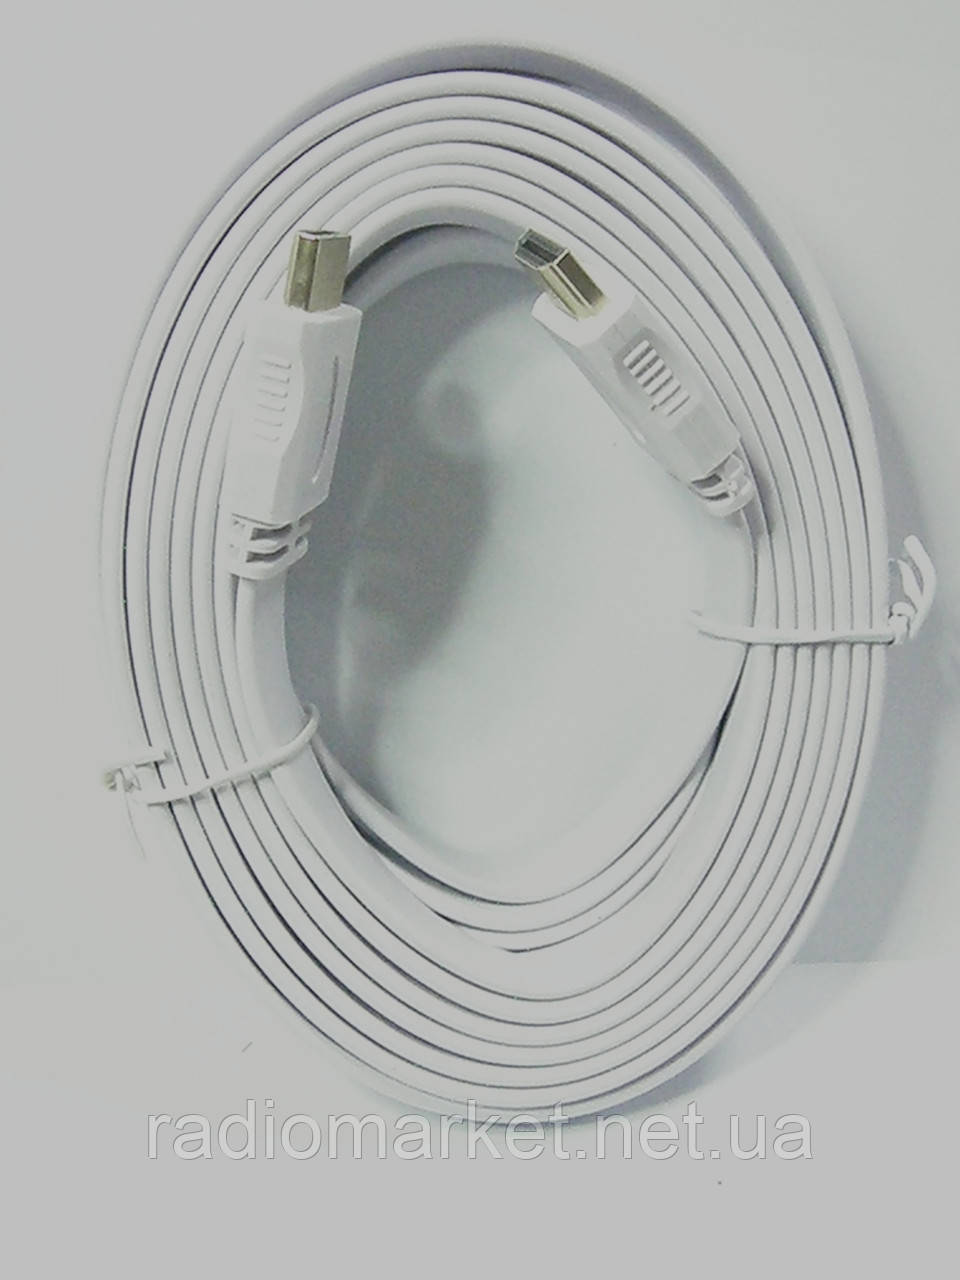 Шнур HDMI-HDMI, плоский кабель, gold, 5 м, білий (в блістері)